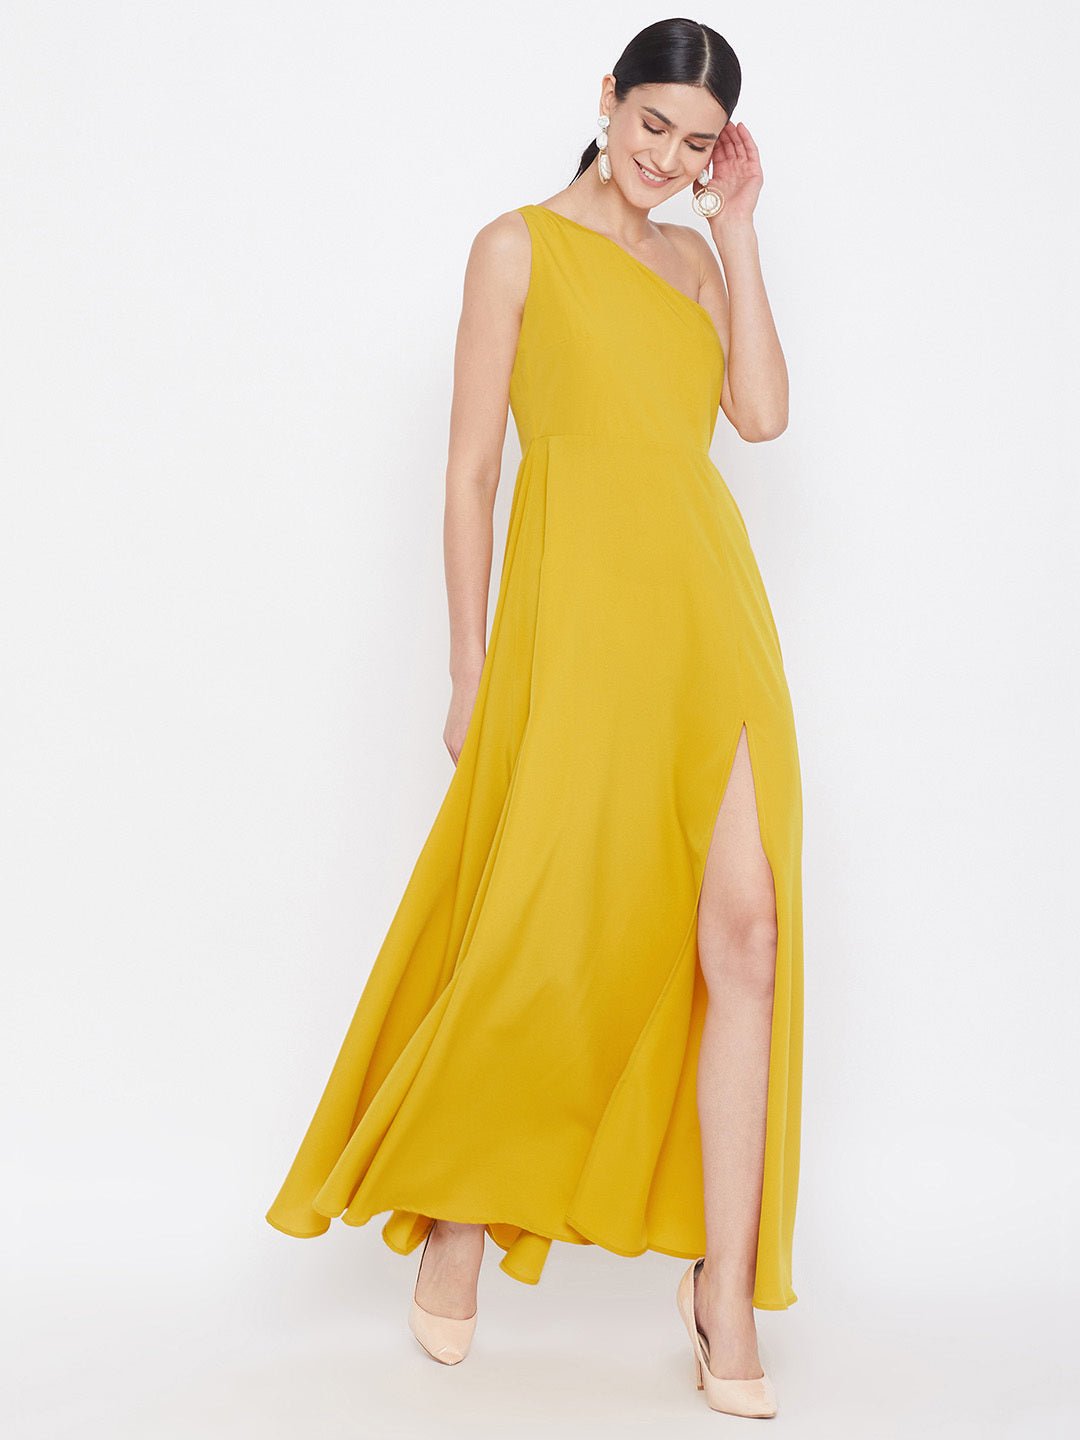 Folk Republic Women Solid Yellow One-Shoulder A-Line Maxi Dress - #folk republic#